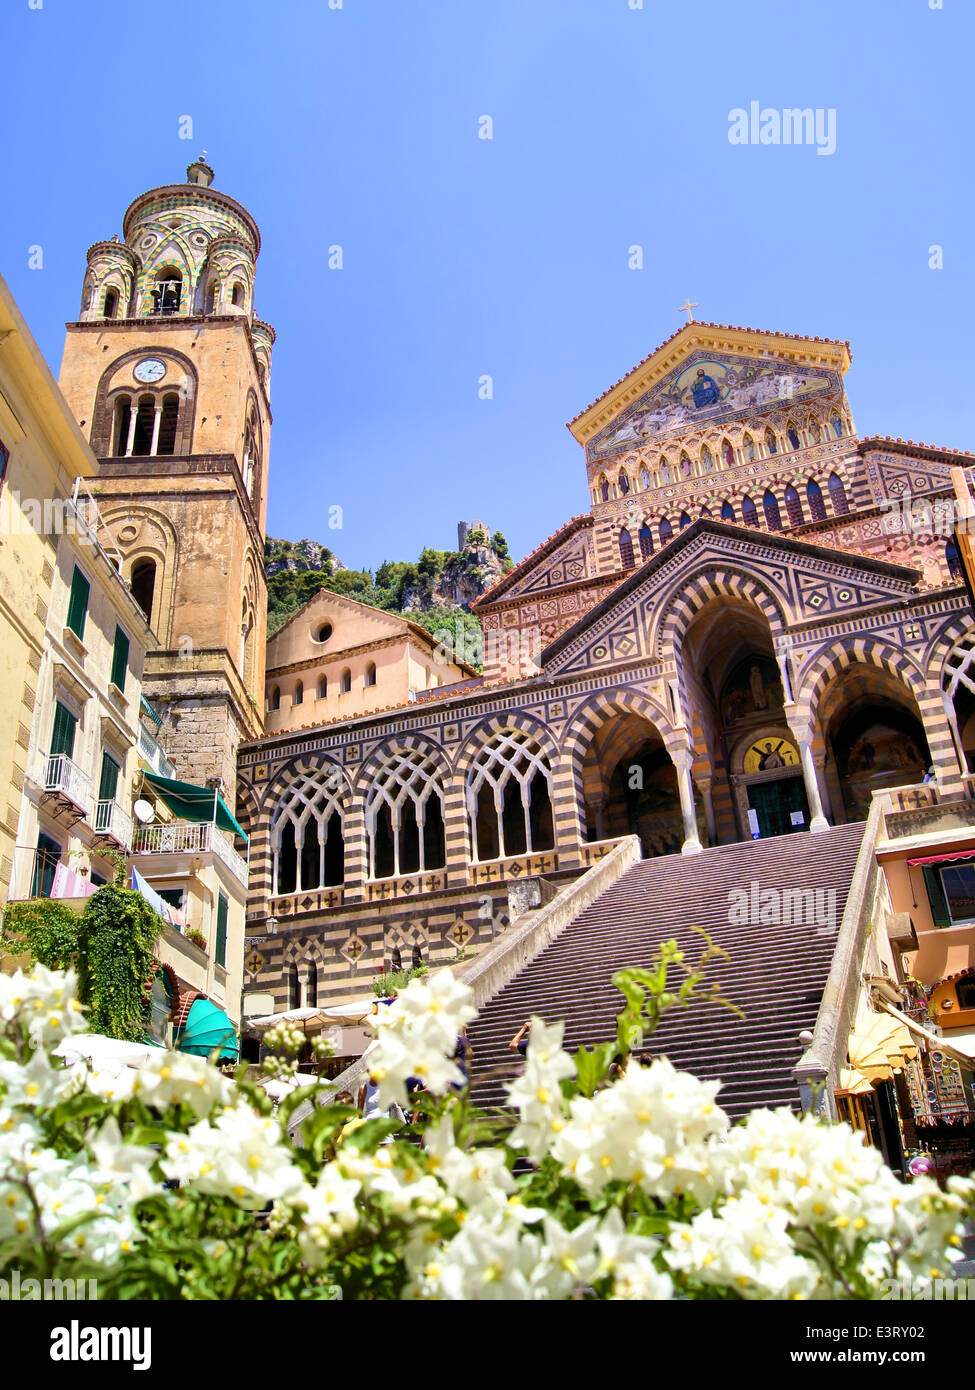 La Cathédrale d'Amalfi orné de fleurs, Italie Banque D'Images